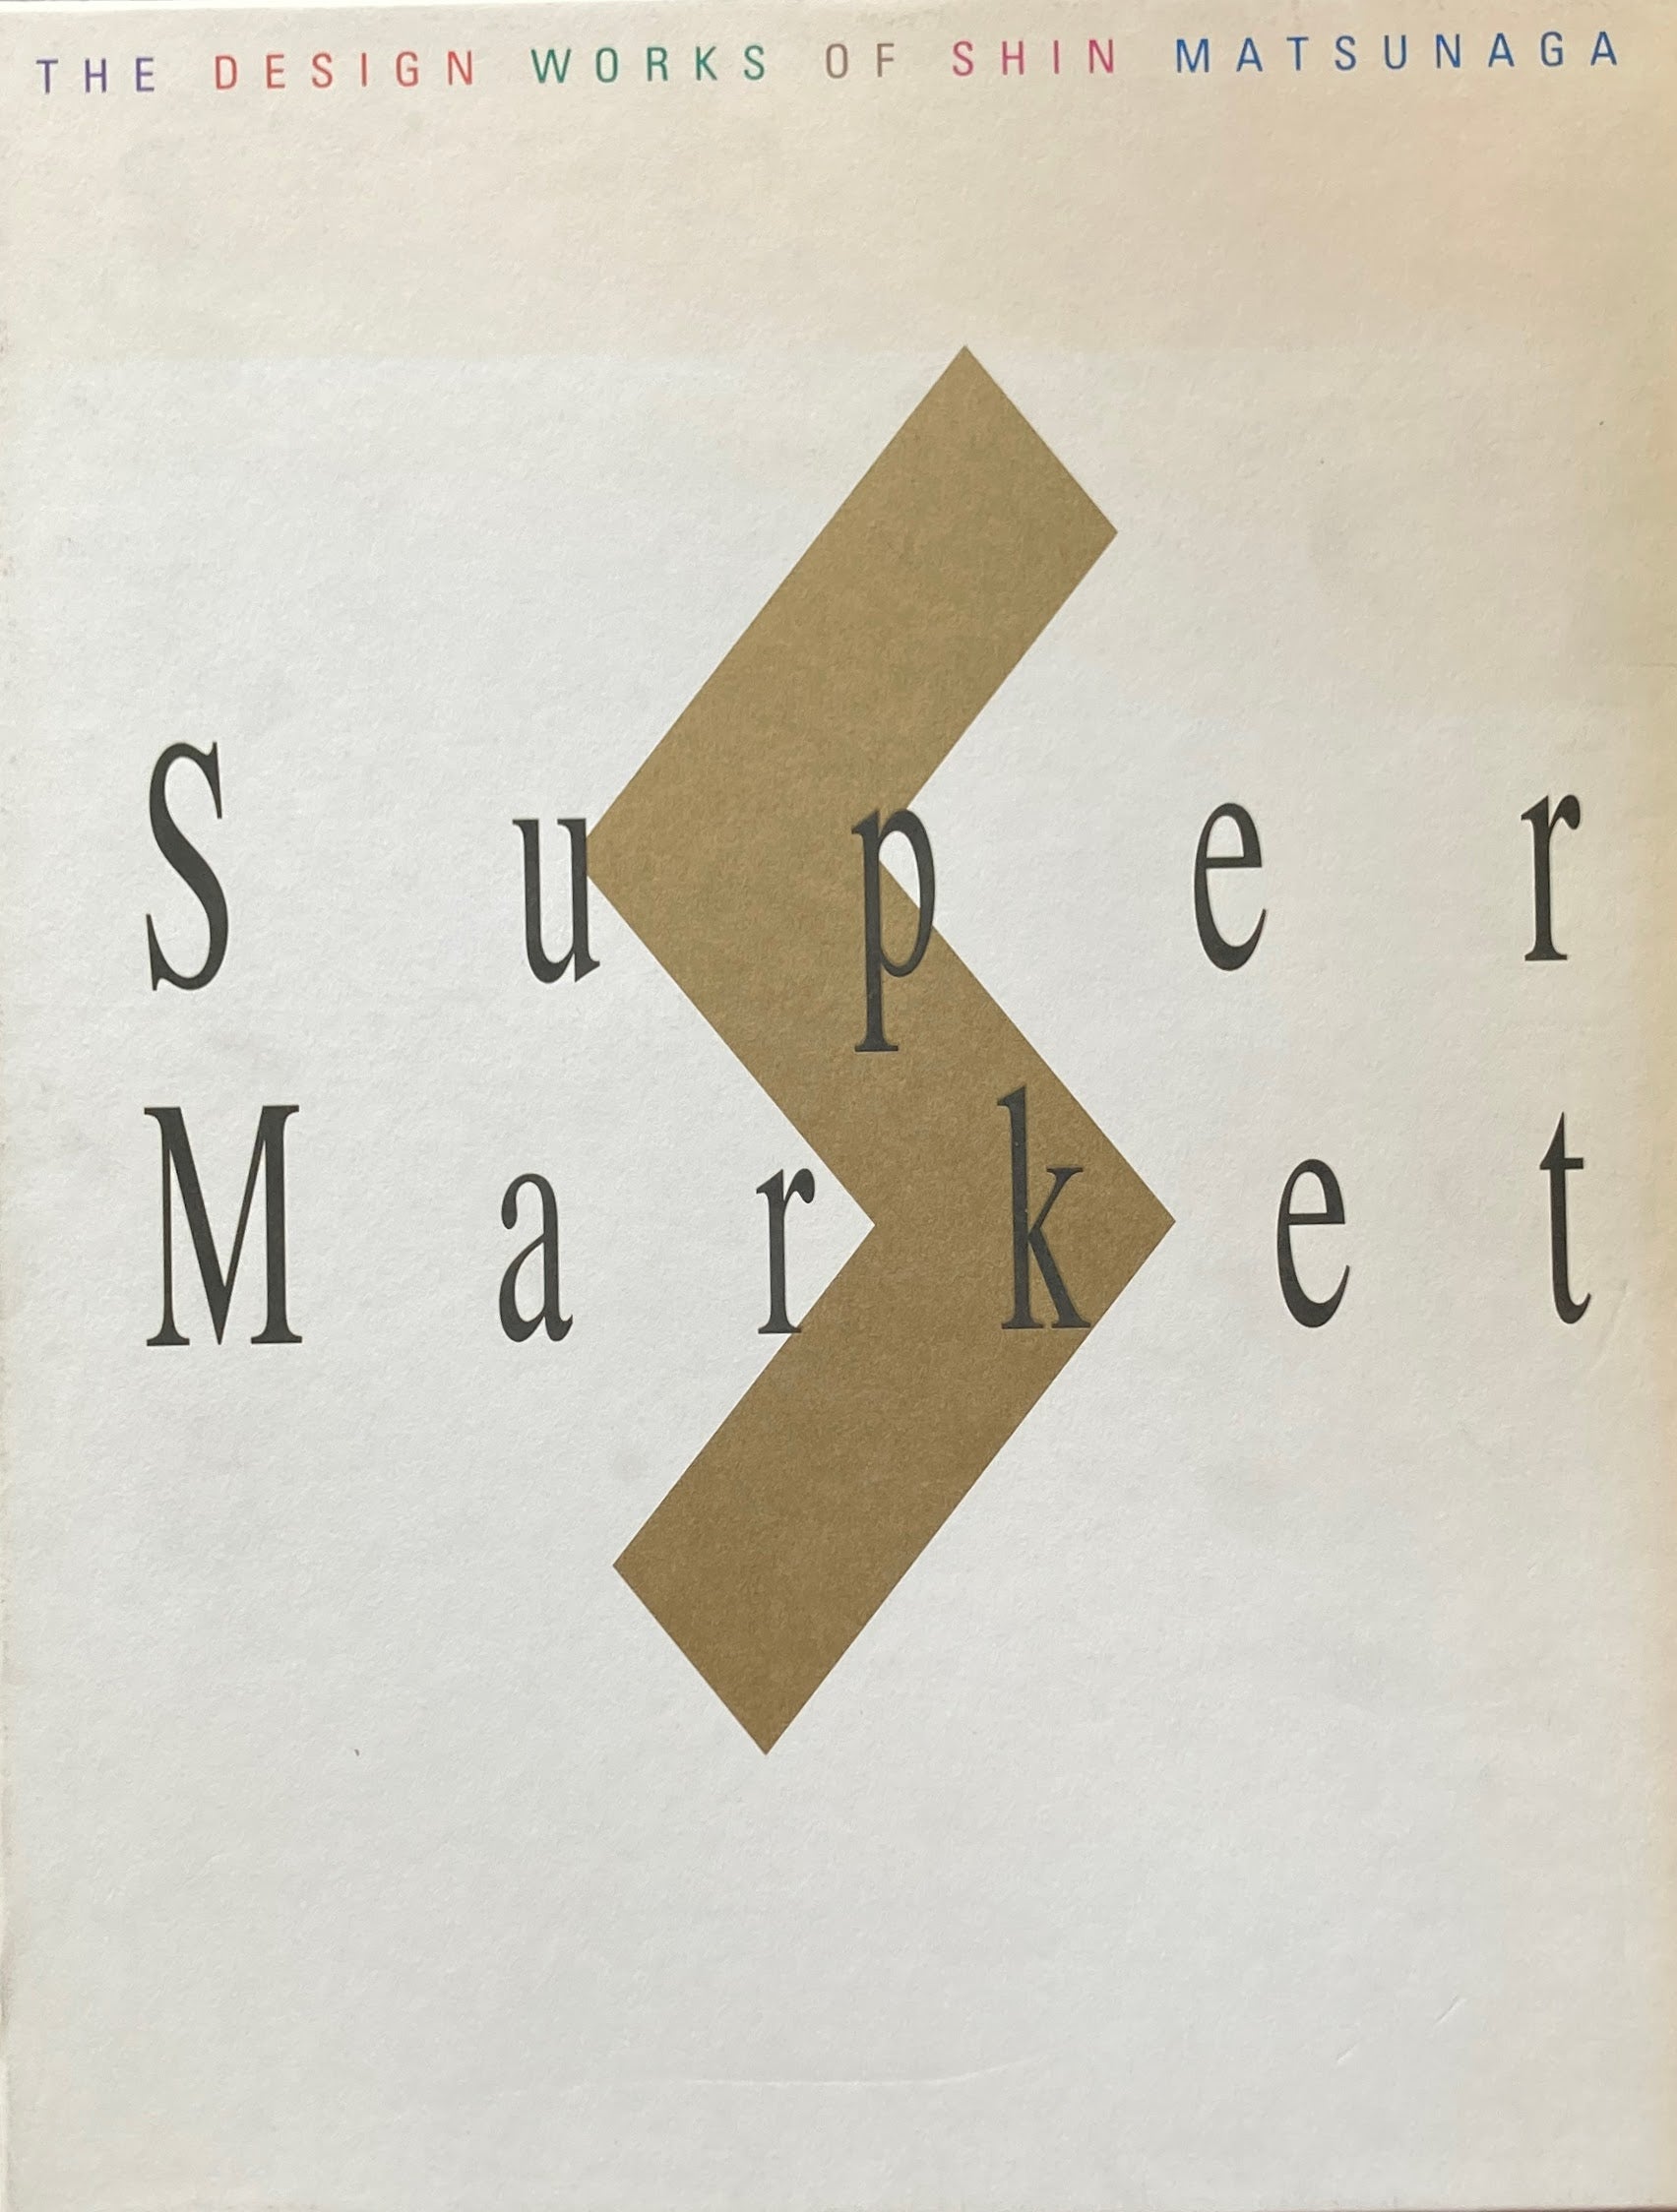 松永真のデザインSuper Market by Shin Matsunaga – smokebooks shop